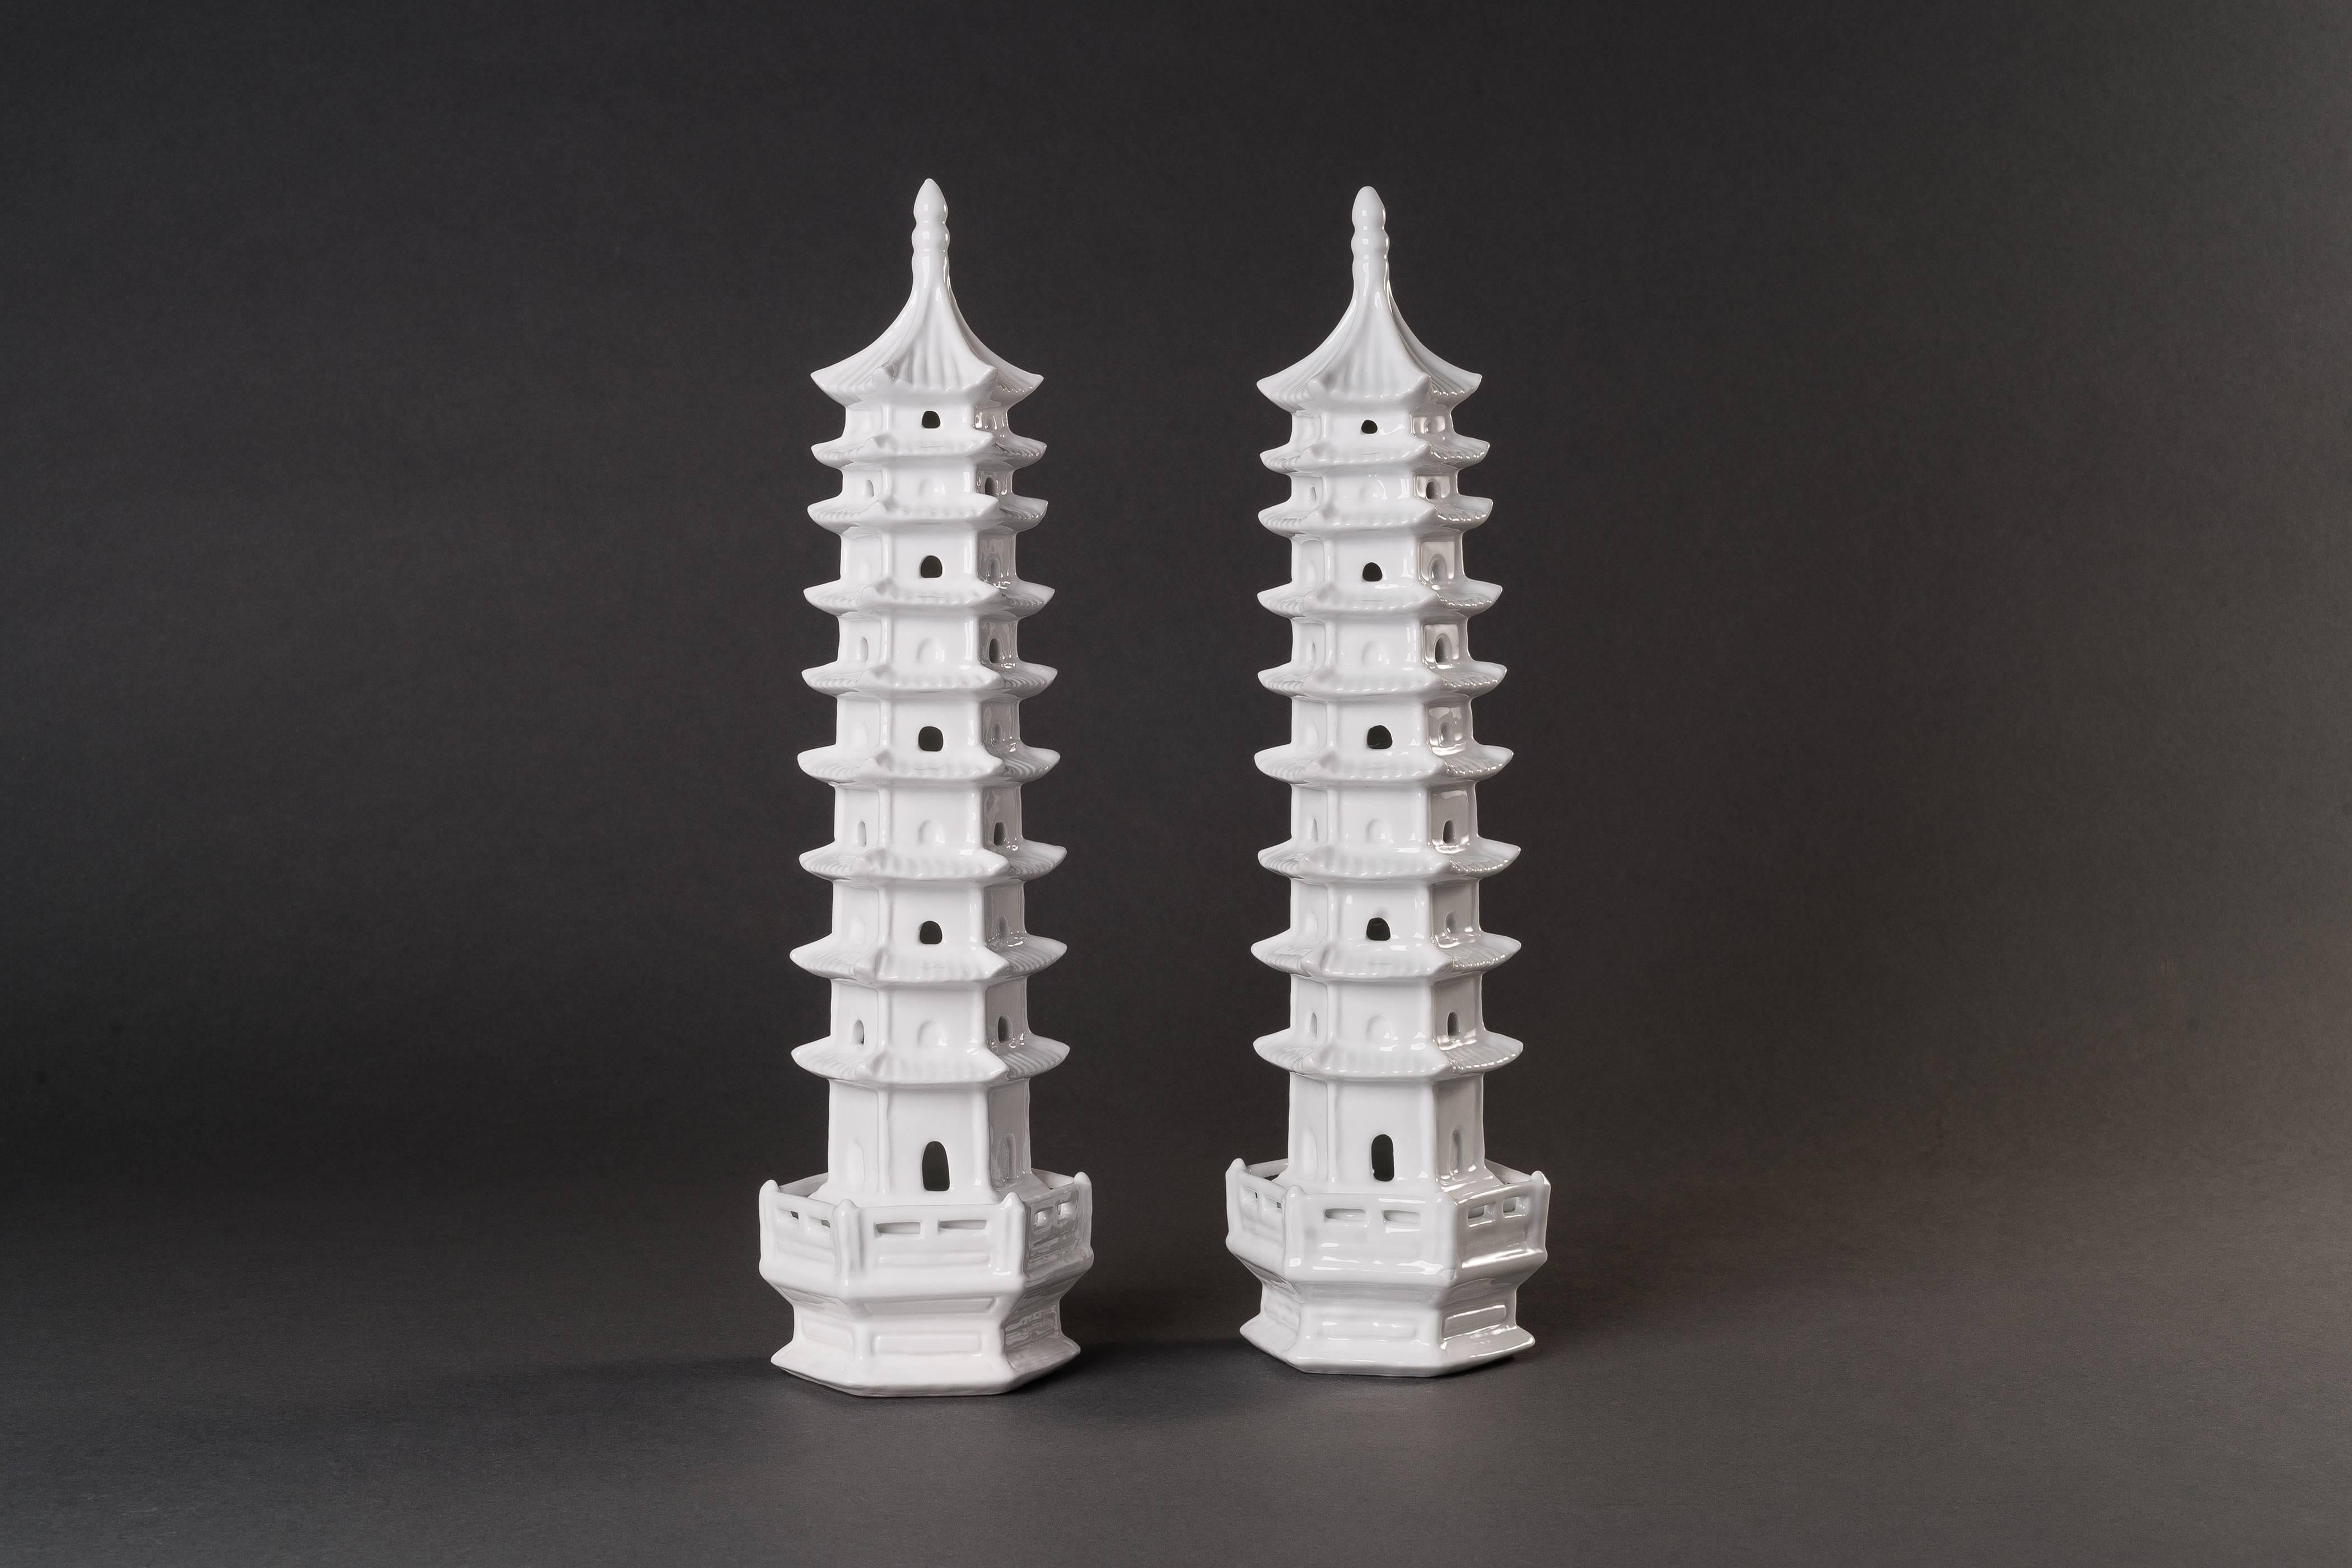 L'ensemble comprend trois paires de pagodes en porcelaine blanche Blanc de Chine de tailles et de formes différentes.
Les pagodes sont une forme d'architecture bouddhiste. Avant que le bouddhisme ne soit introduit en Chine depuis l'Inde, il n'y